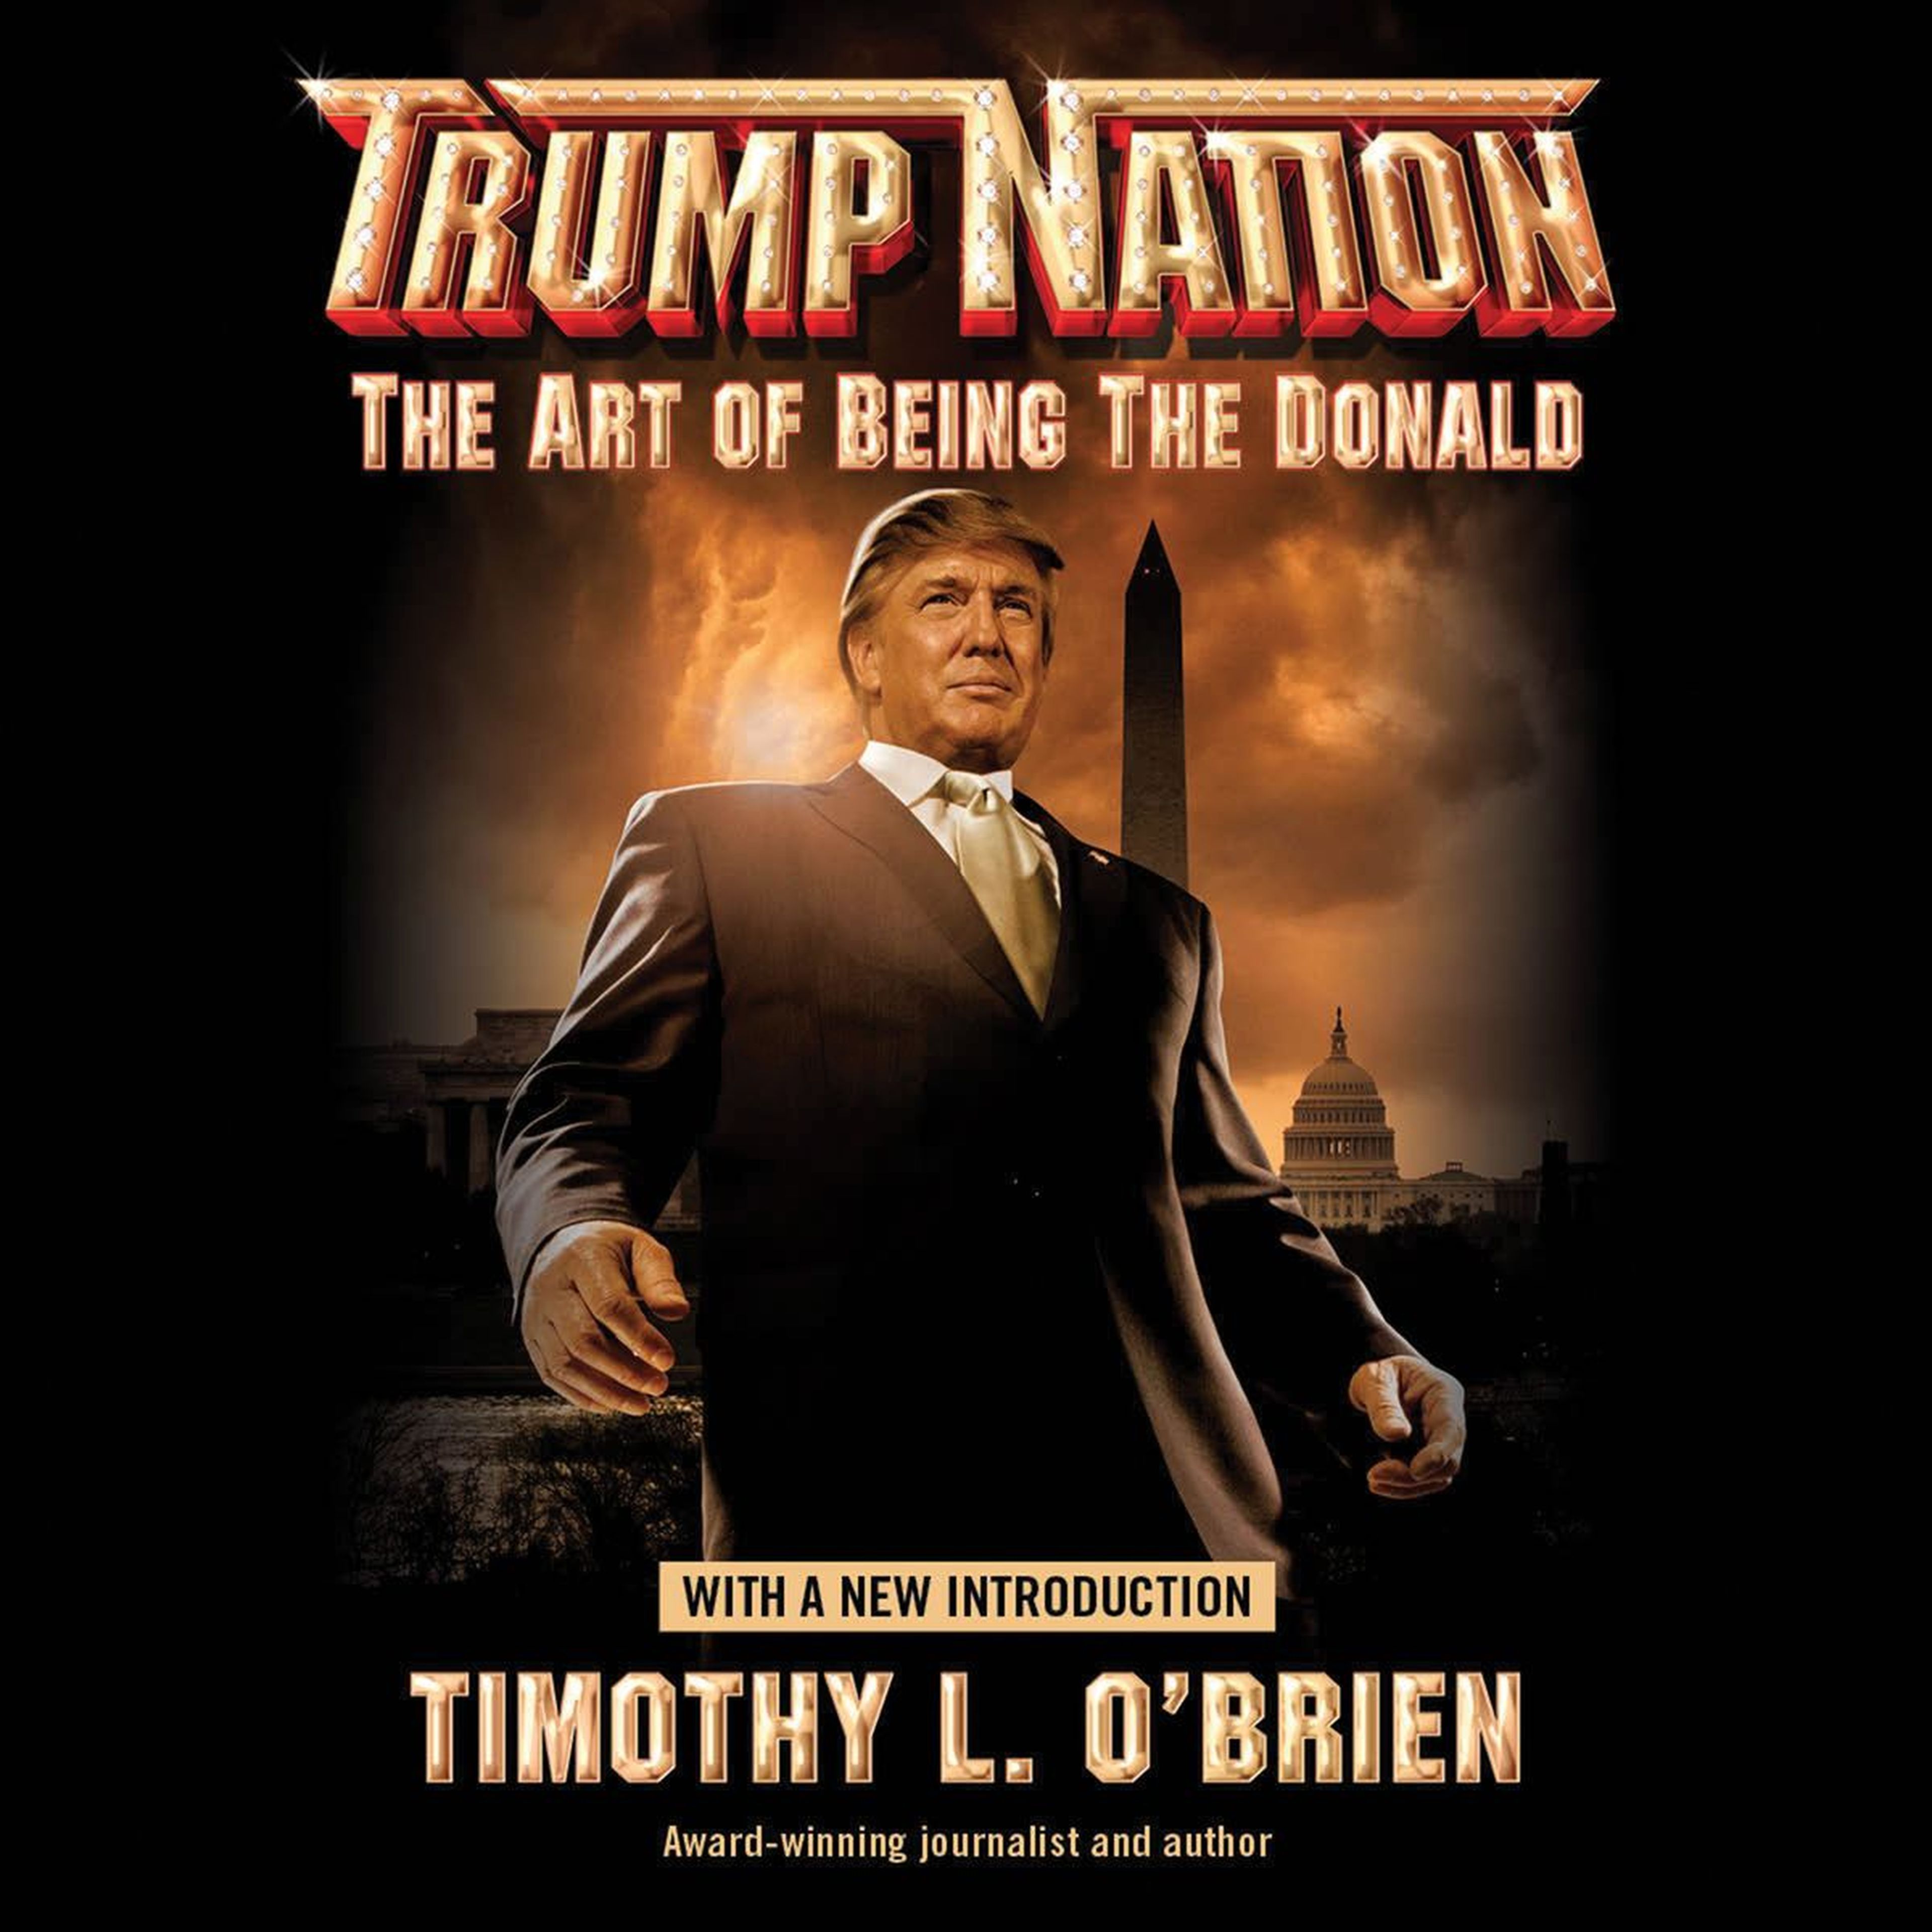 Portada del libro Trump Nation.